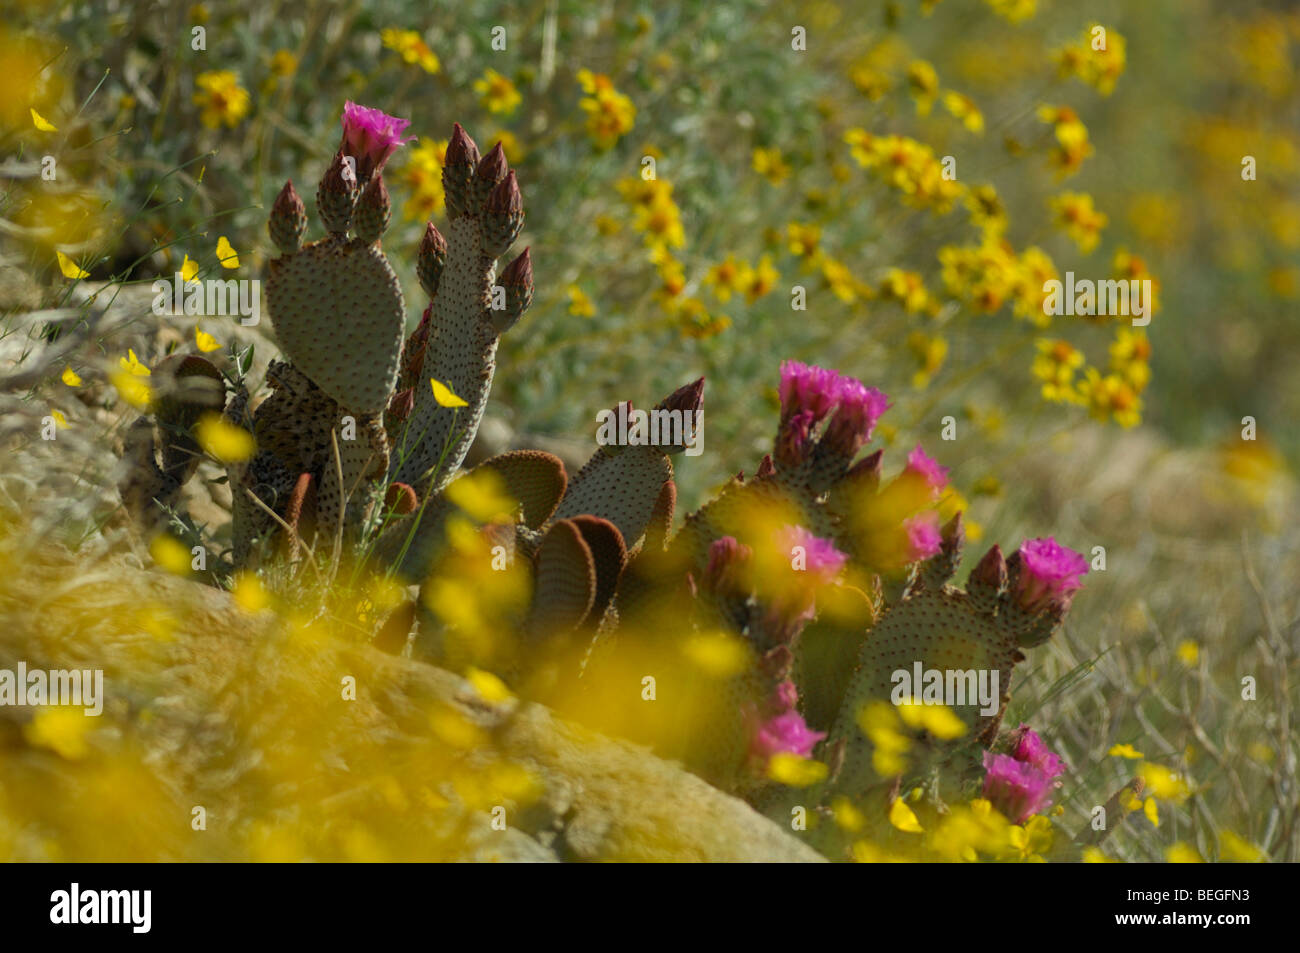 Beavertail cactus (Opuntia basilaris) Stock Photo